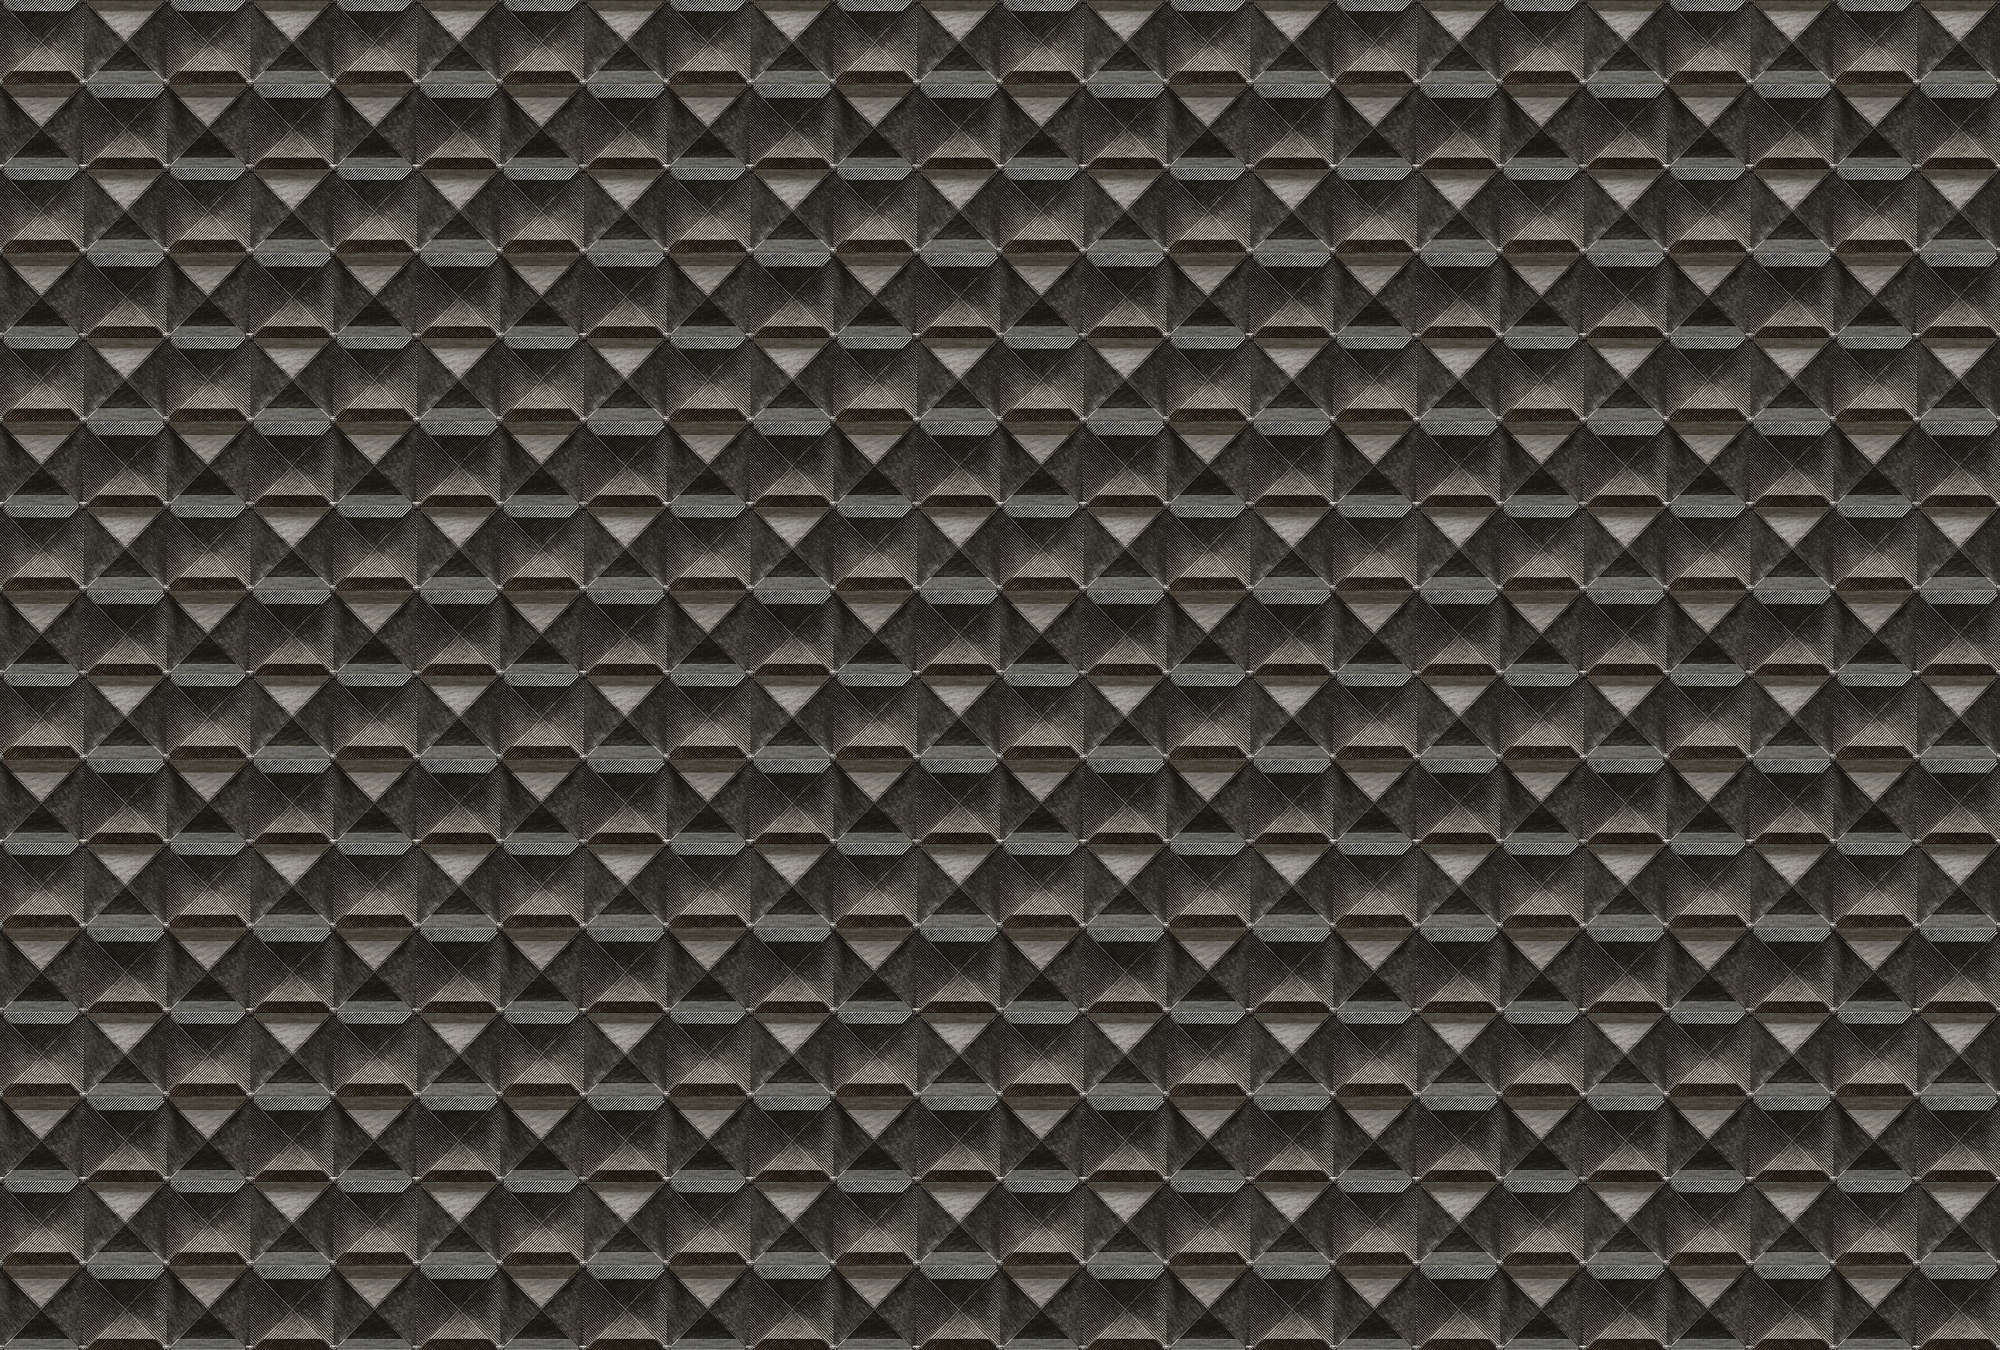             The edge 1 - Papier peint 3D avec design métallique en losange - marron, noir | structure Intissé
        